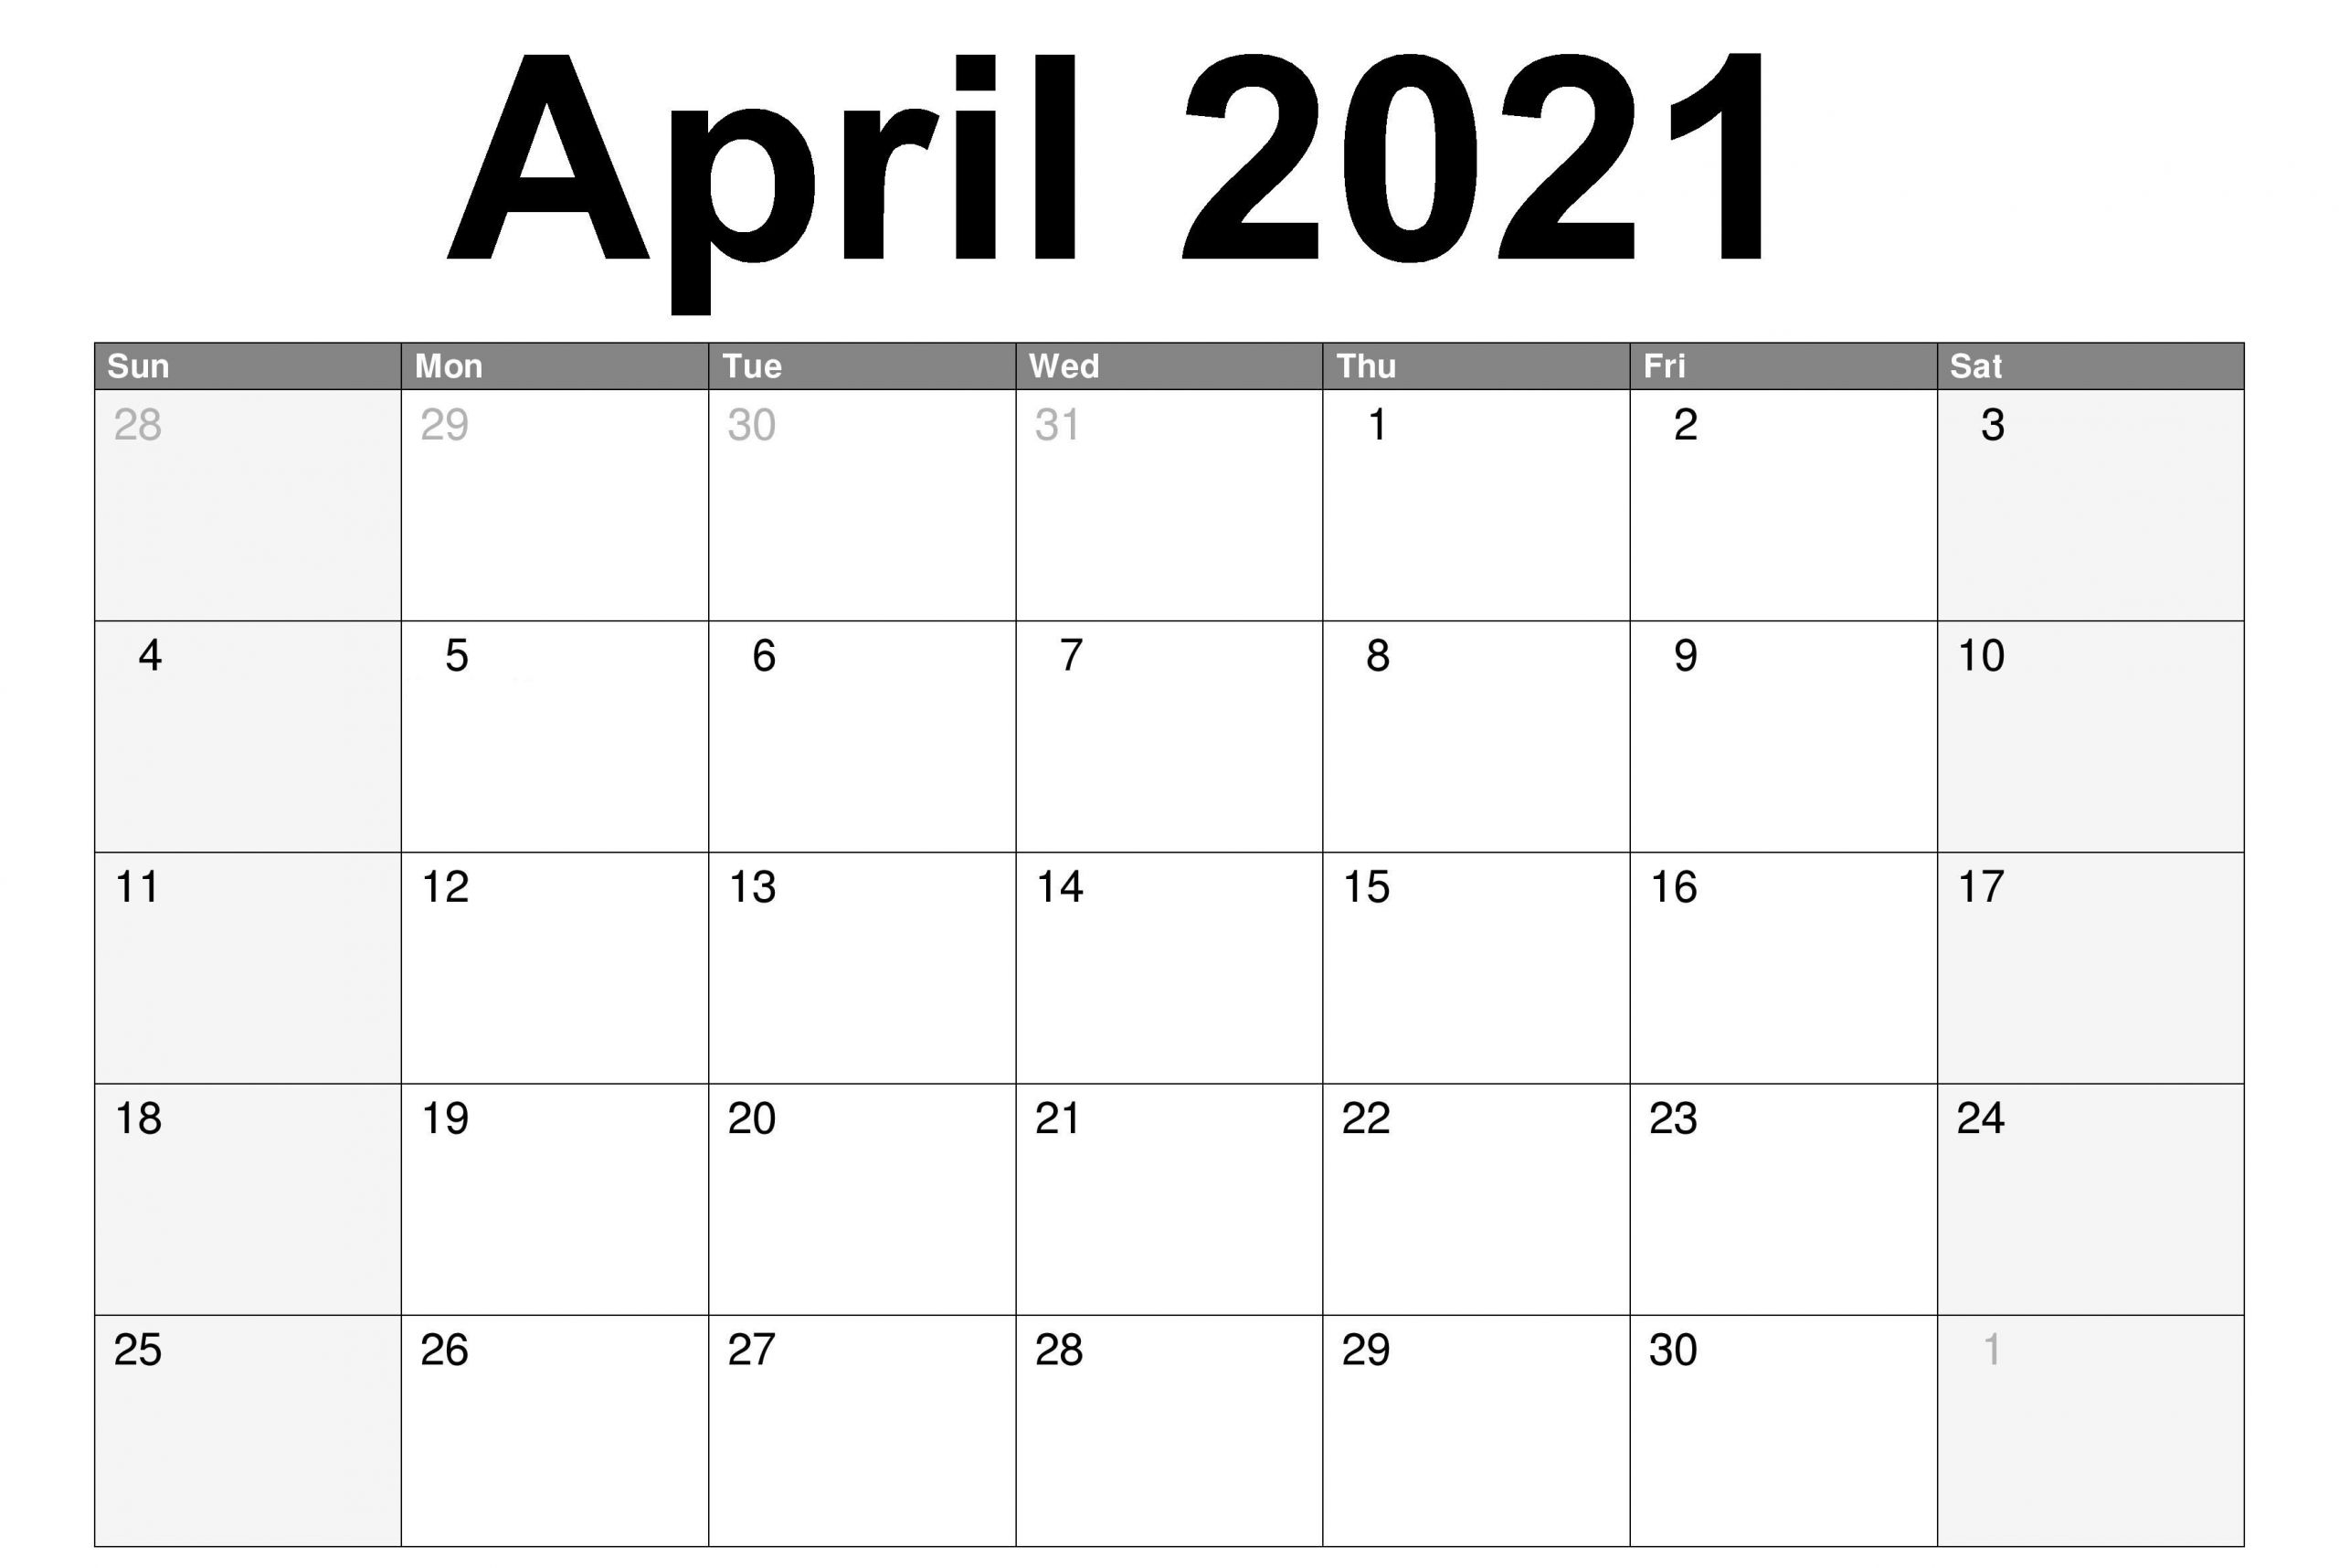 April 2021 Calendar PDF in 2020